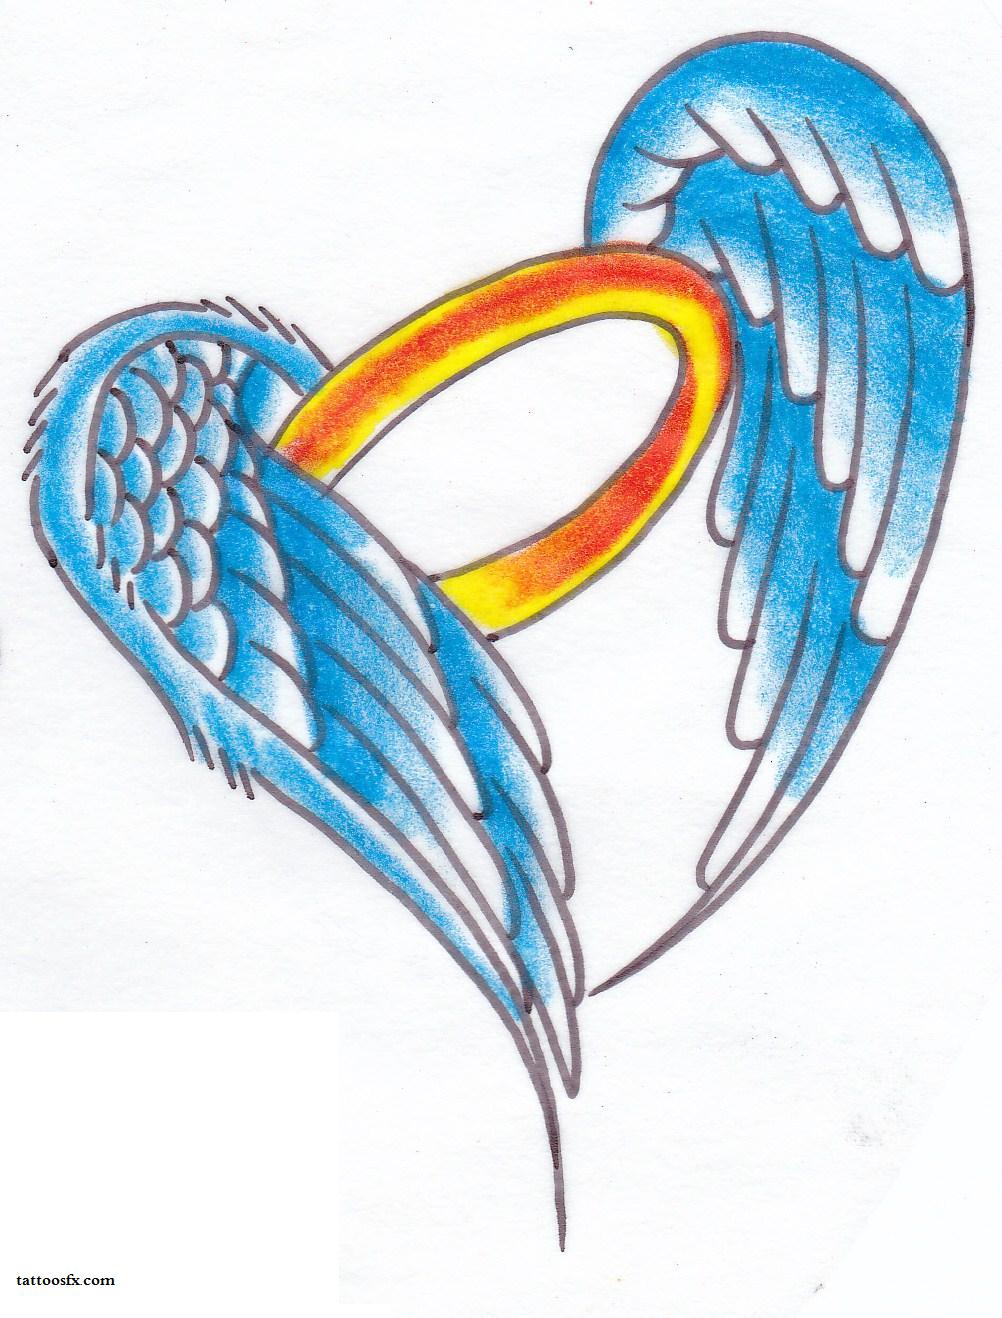 Angel wing tattoo designs - key tattoo designs - free tattoo designs